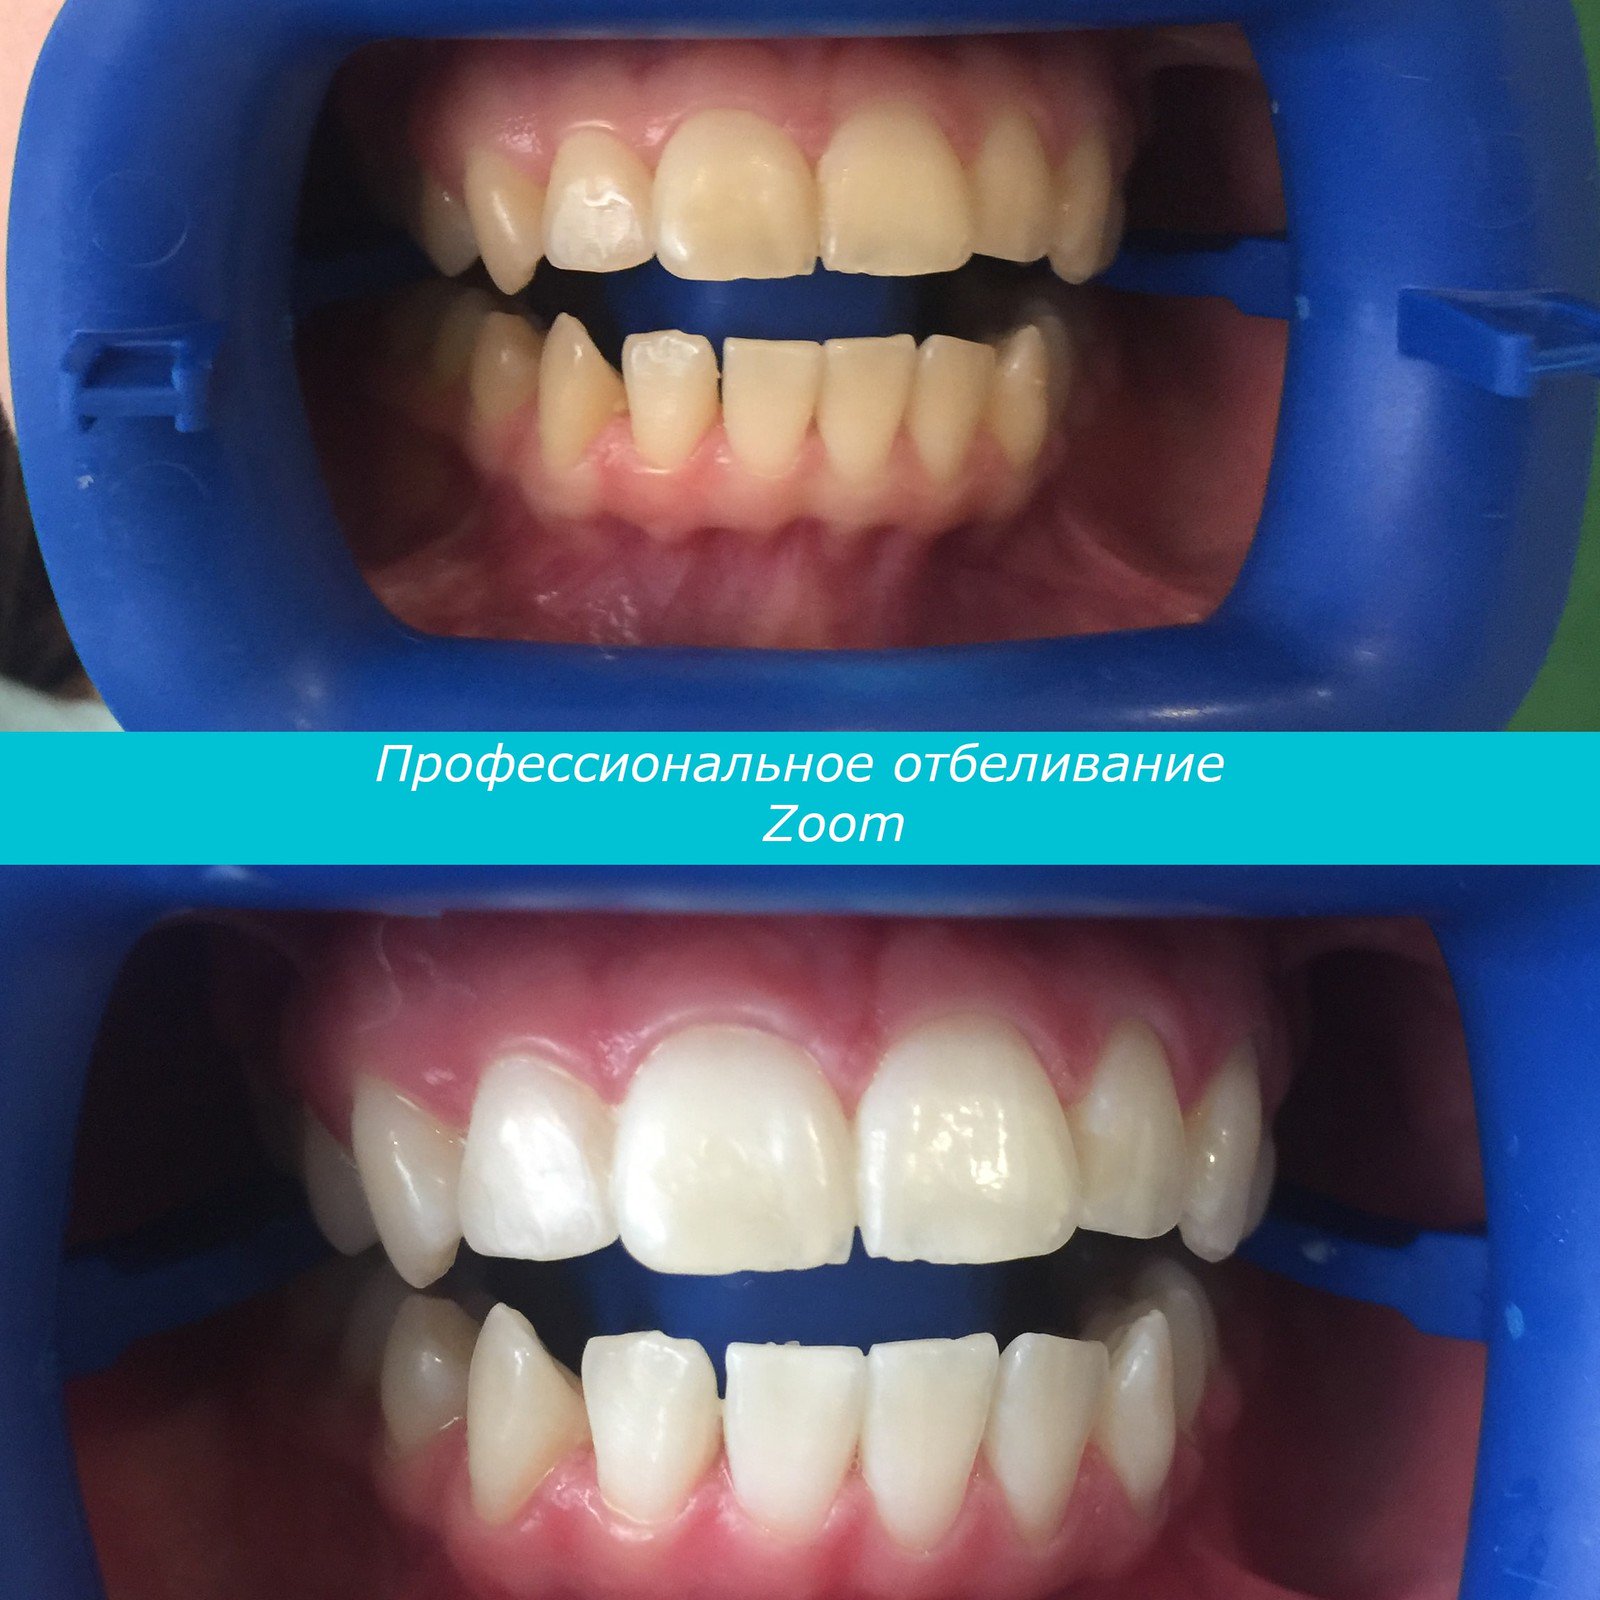 Системы отбеливания зубов плюсы и минусы филипс зубная щетка для детей